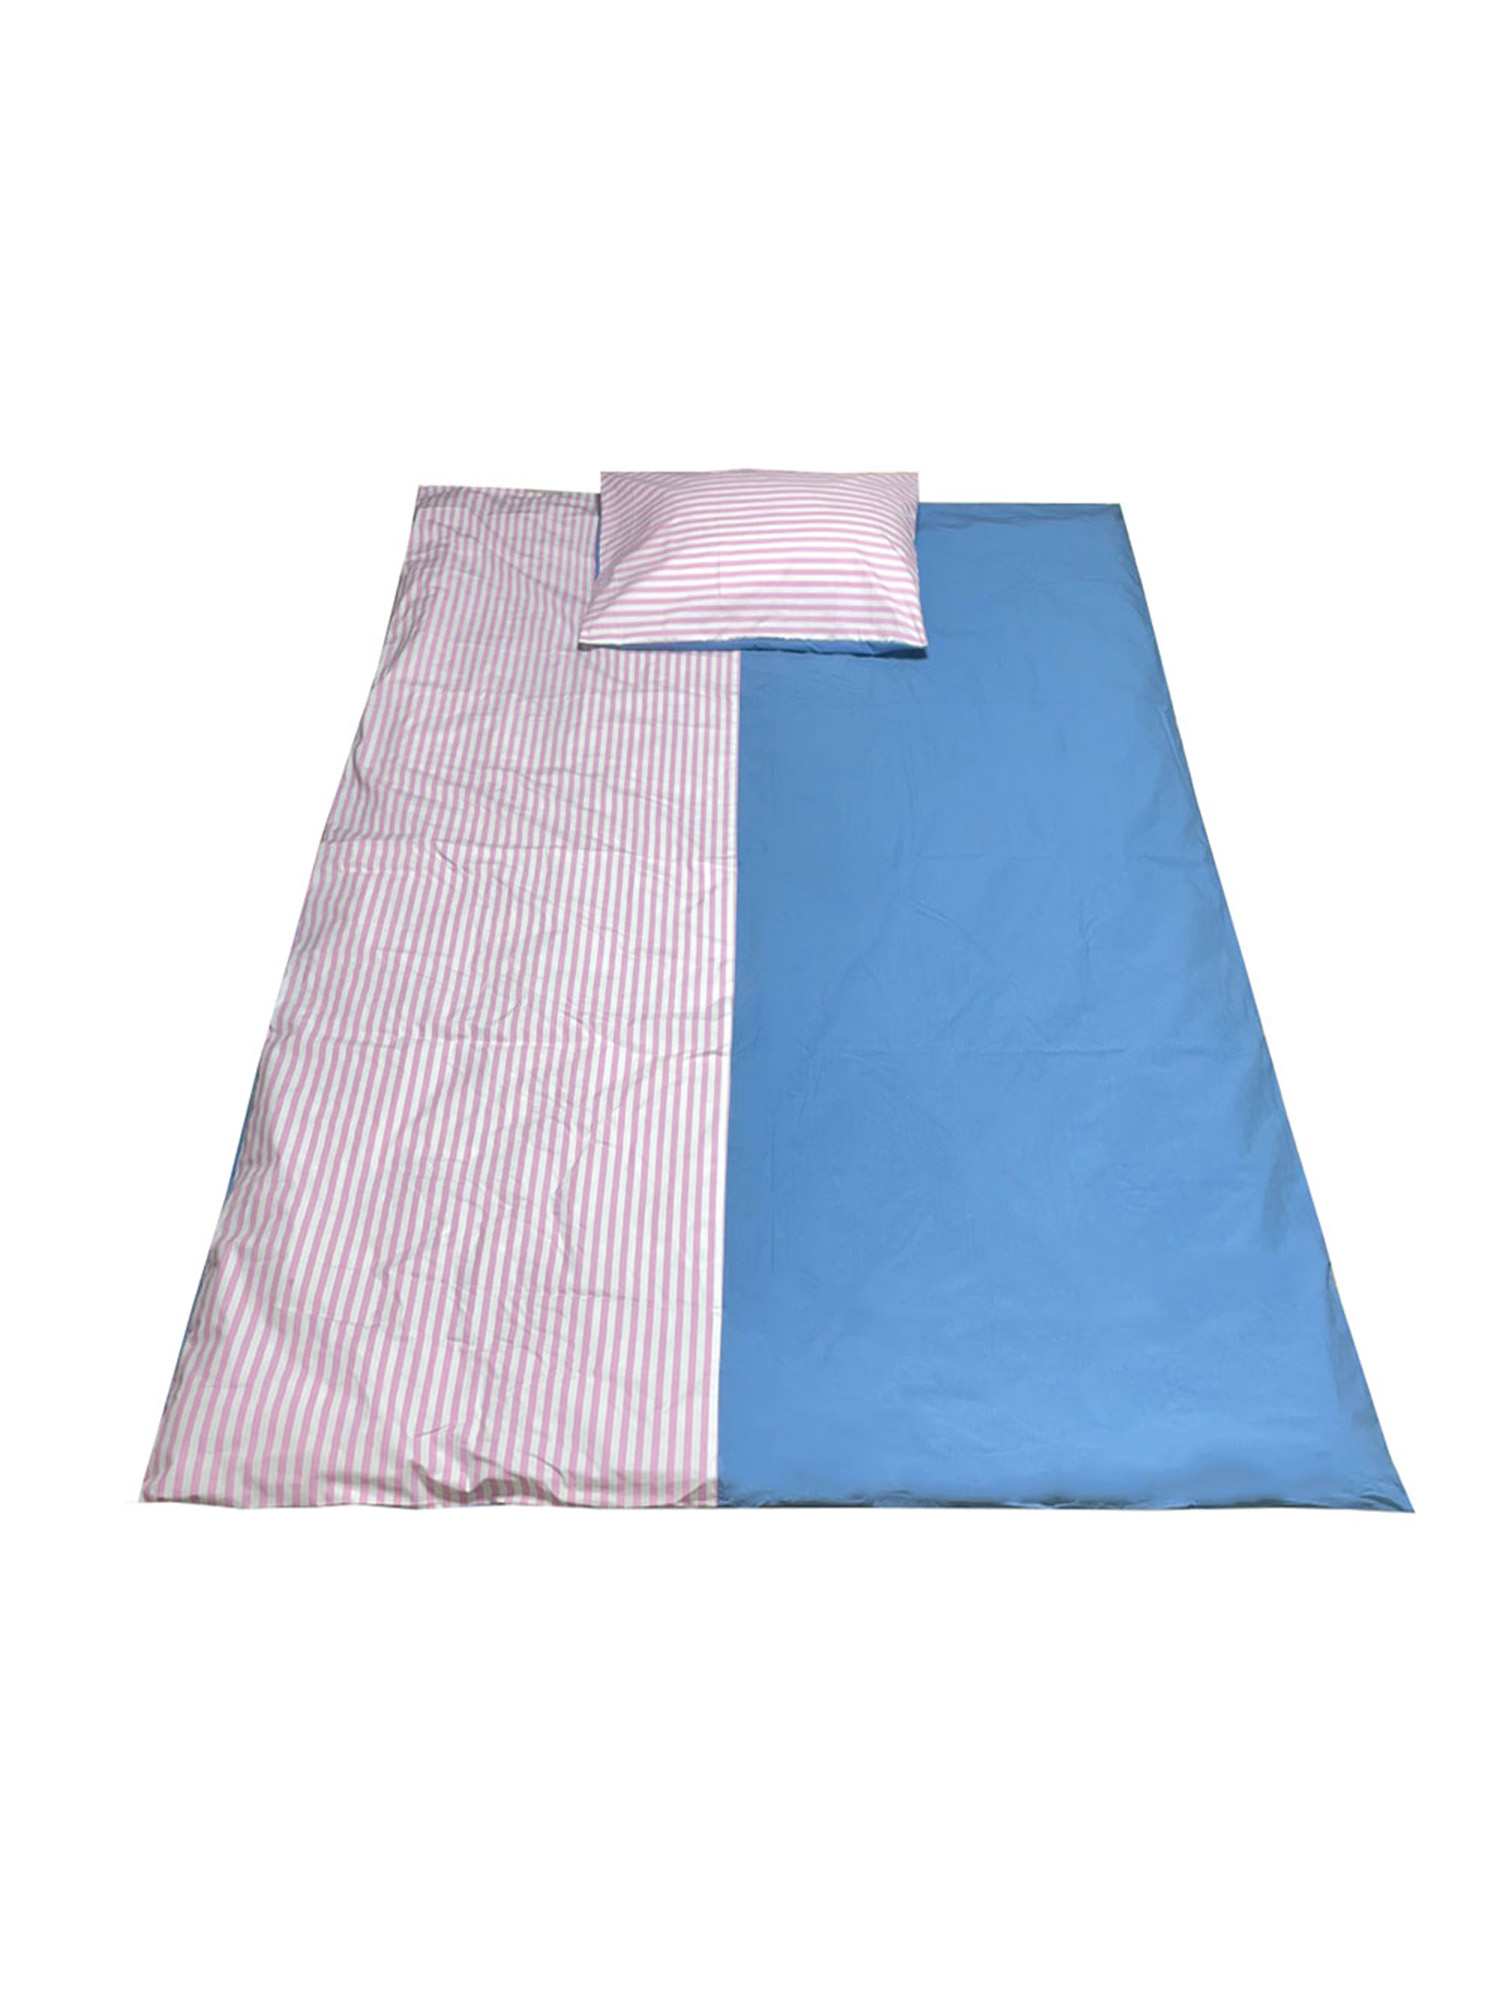 Half Stripe Bedding Cover Set - Pink Sky Blue